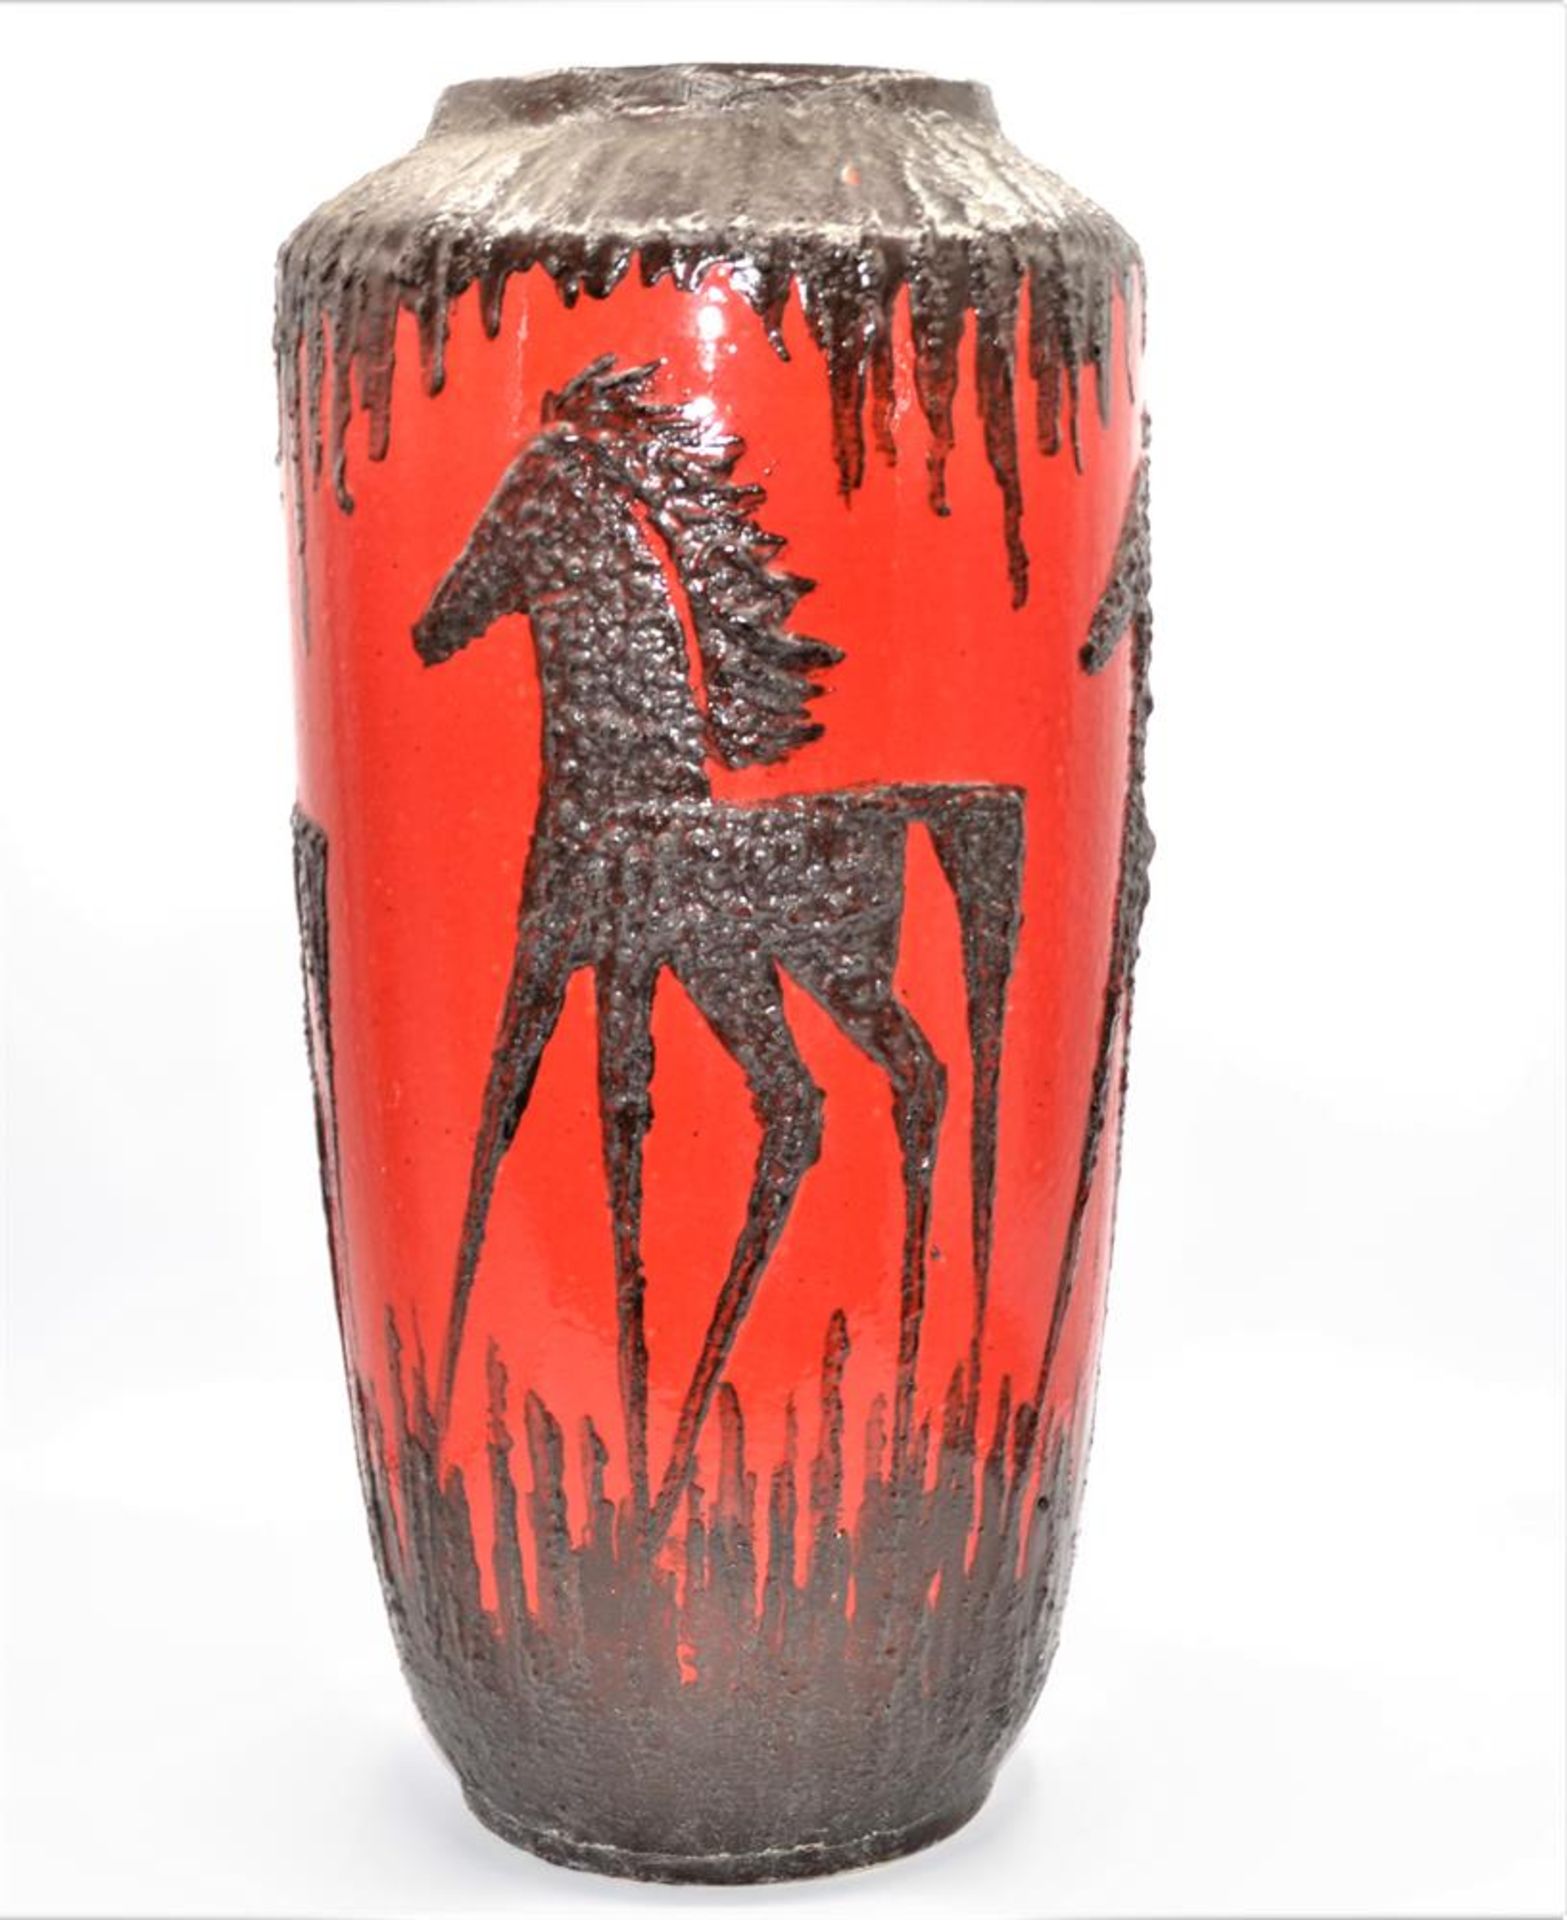 Scheurich Keramik Vase Modell 517-50 Lava Design mit schwarzen Pferden, 70er Jahre, ca. 49cm